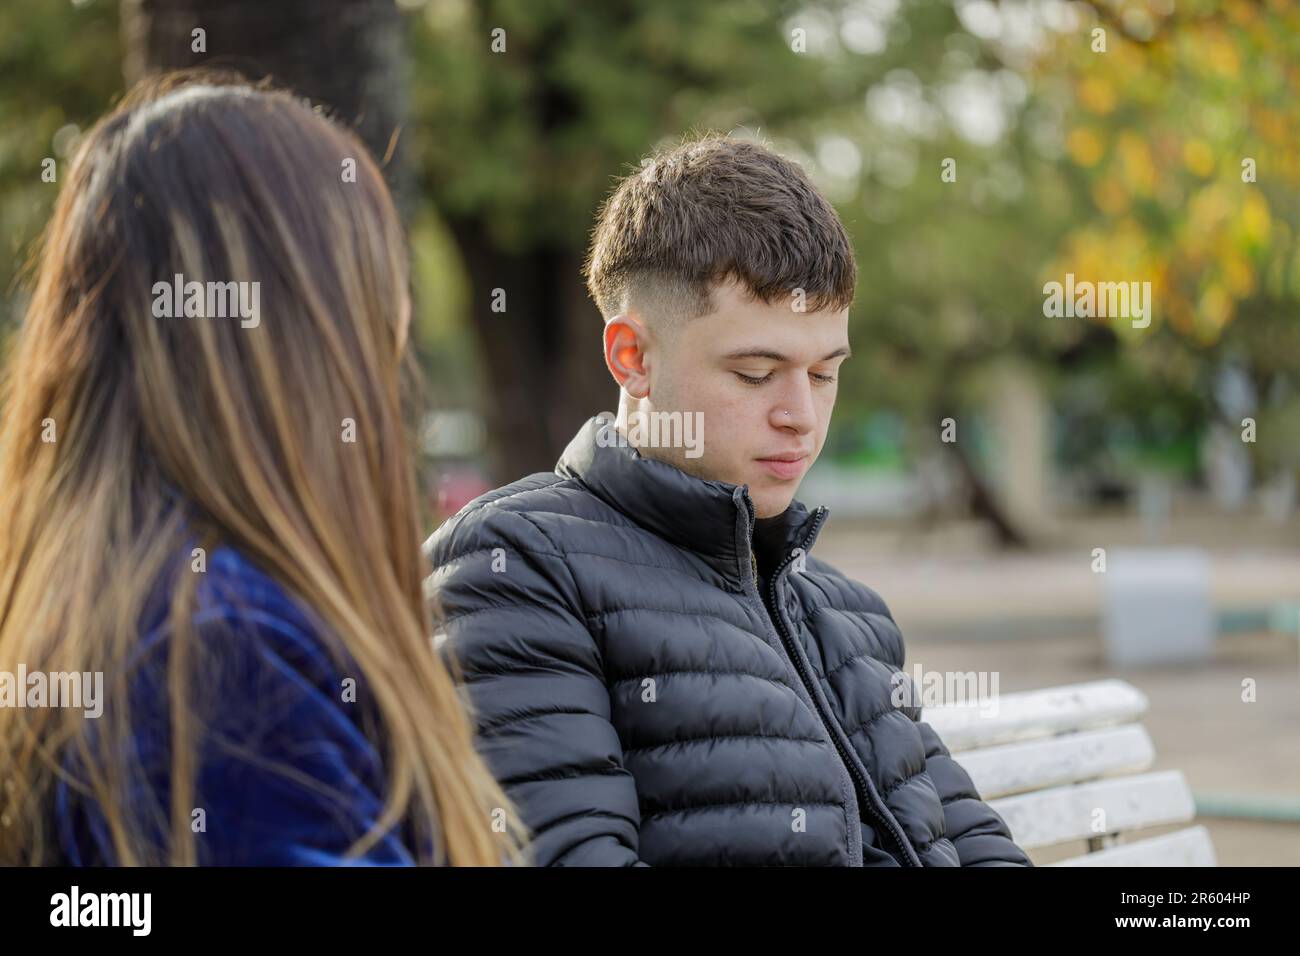 Ein Junge mit einer melancholischen Geste, der auf einer Bank neben einem Mädchen sitzt. Stockfoto